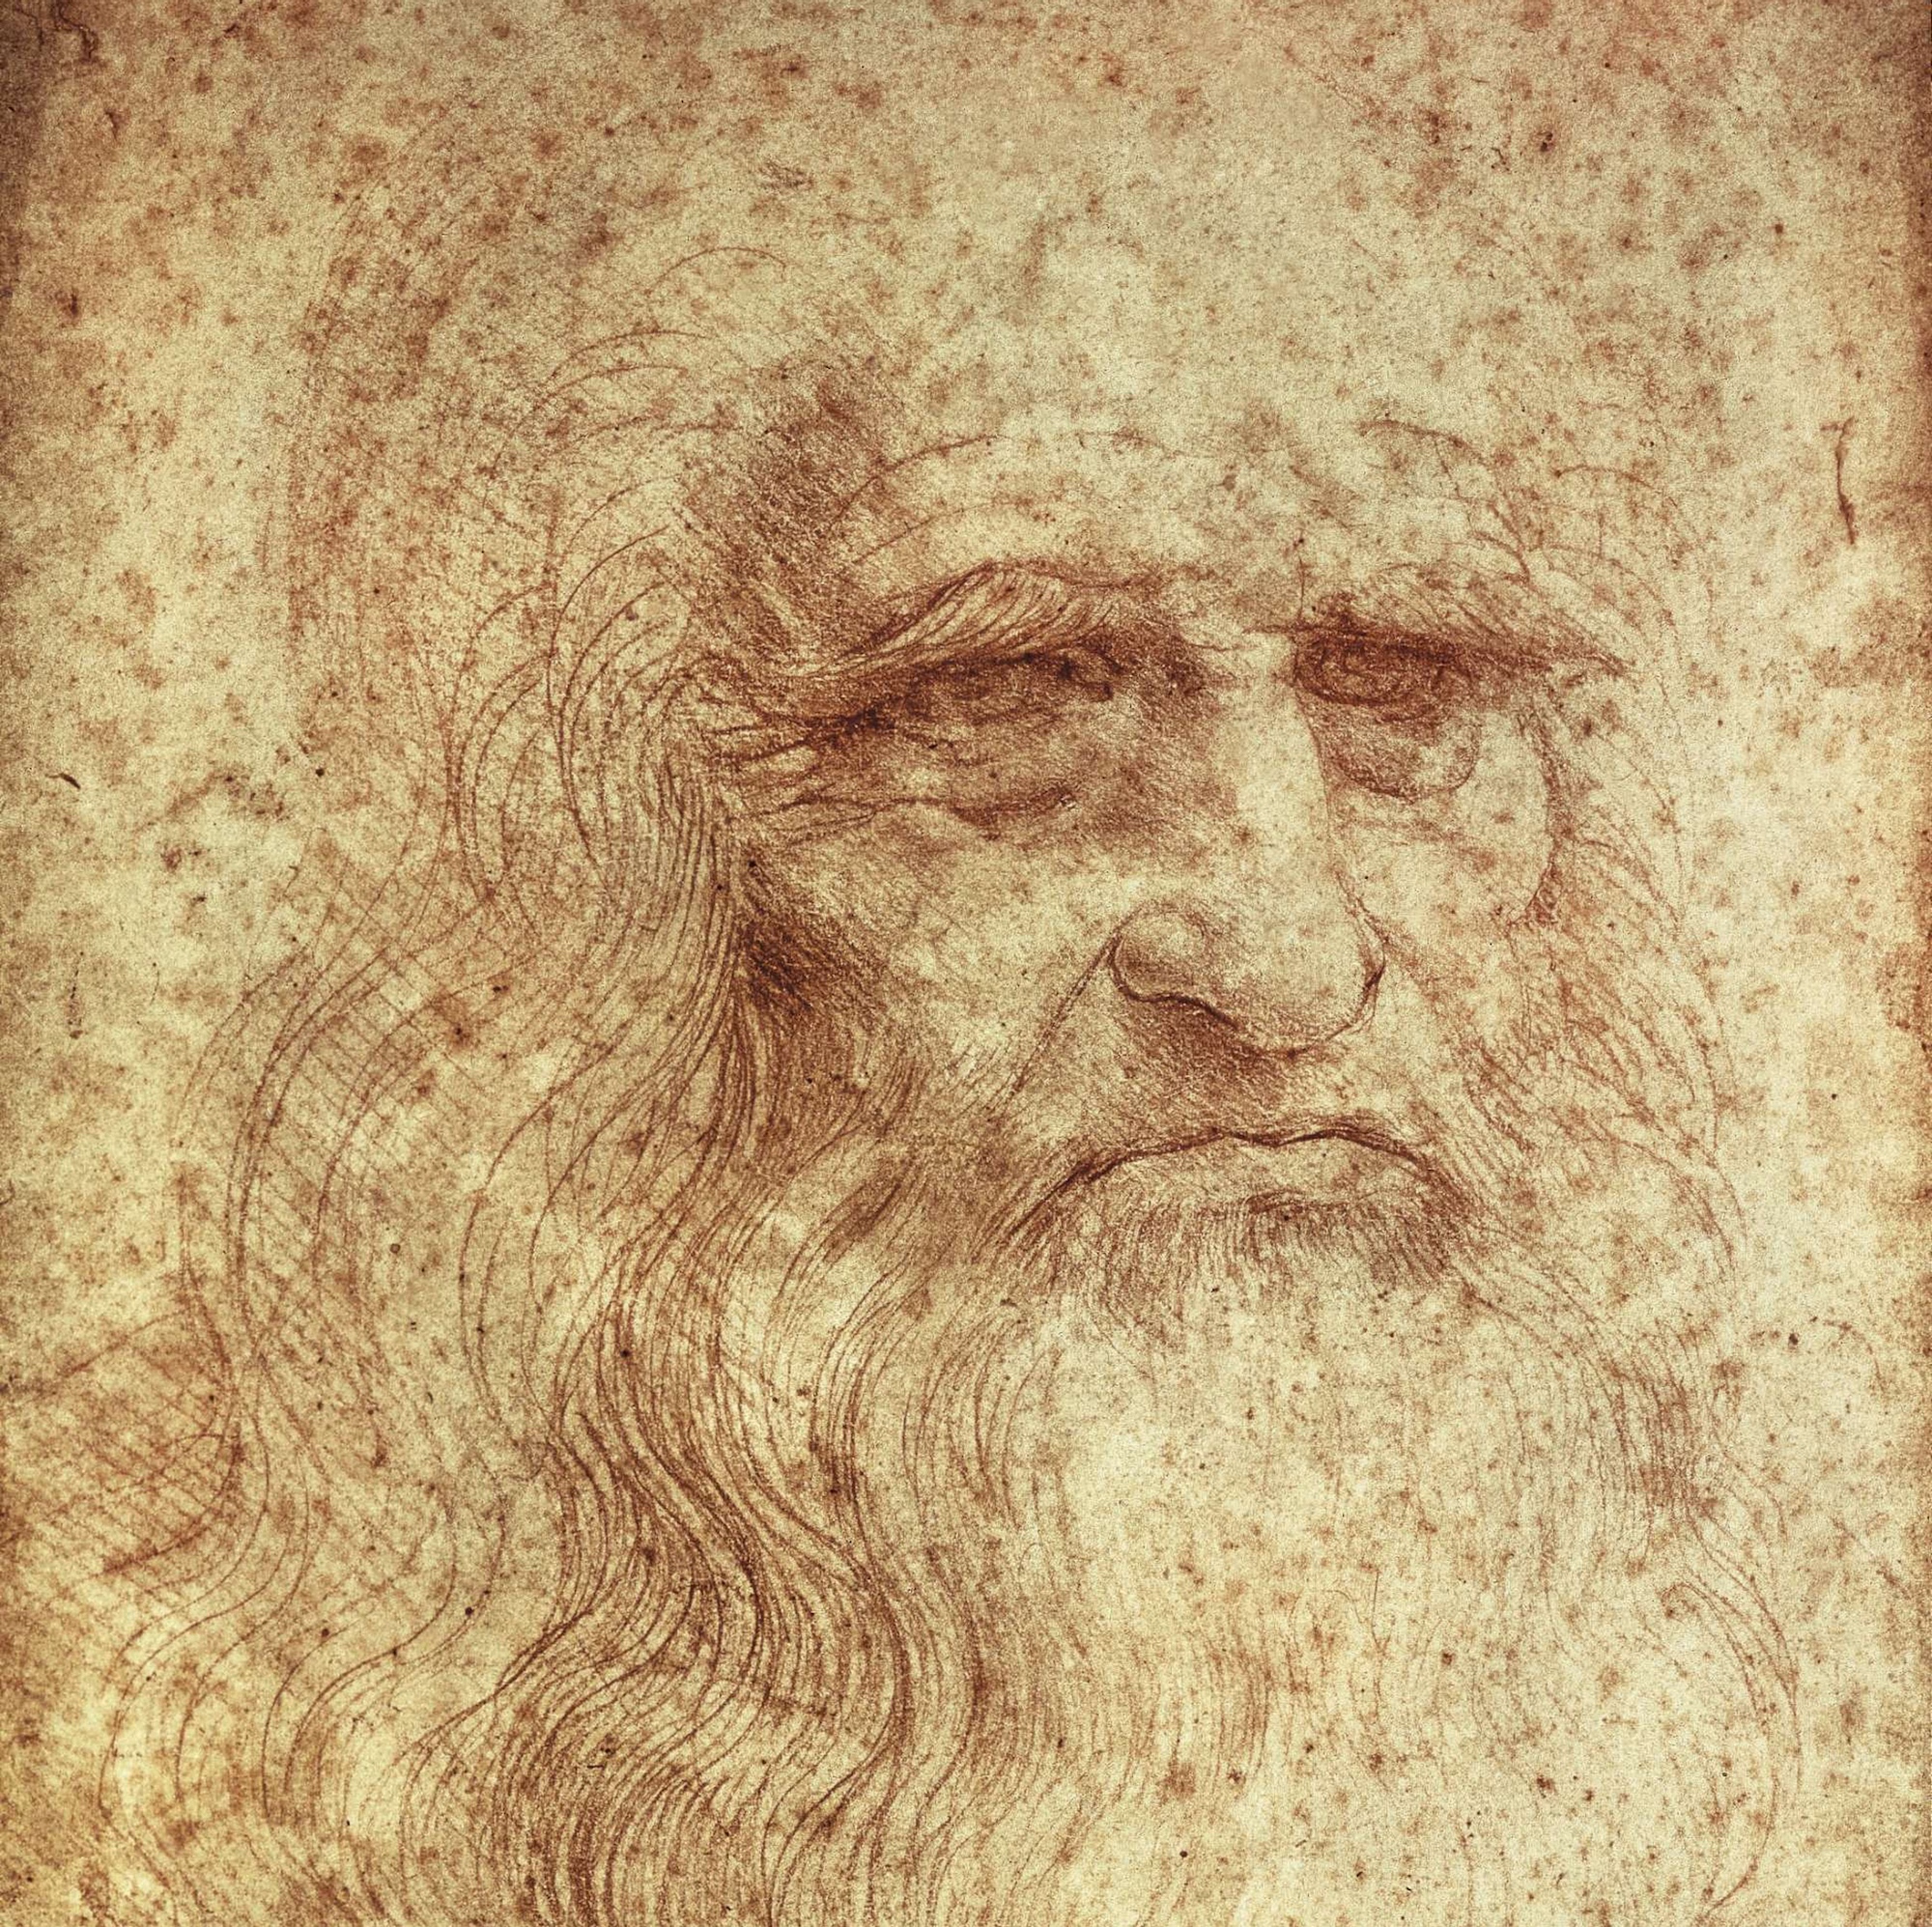 Léonard de Vinci, inventeur, artiste, écrivain... continue de fasciner par ses nombreuses compétences dans les domaines scientifiques, artistiques et techniques. © Everett – Art, Shutterstock